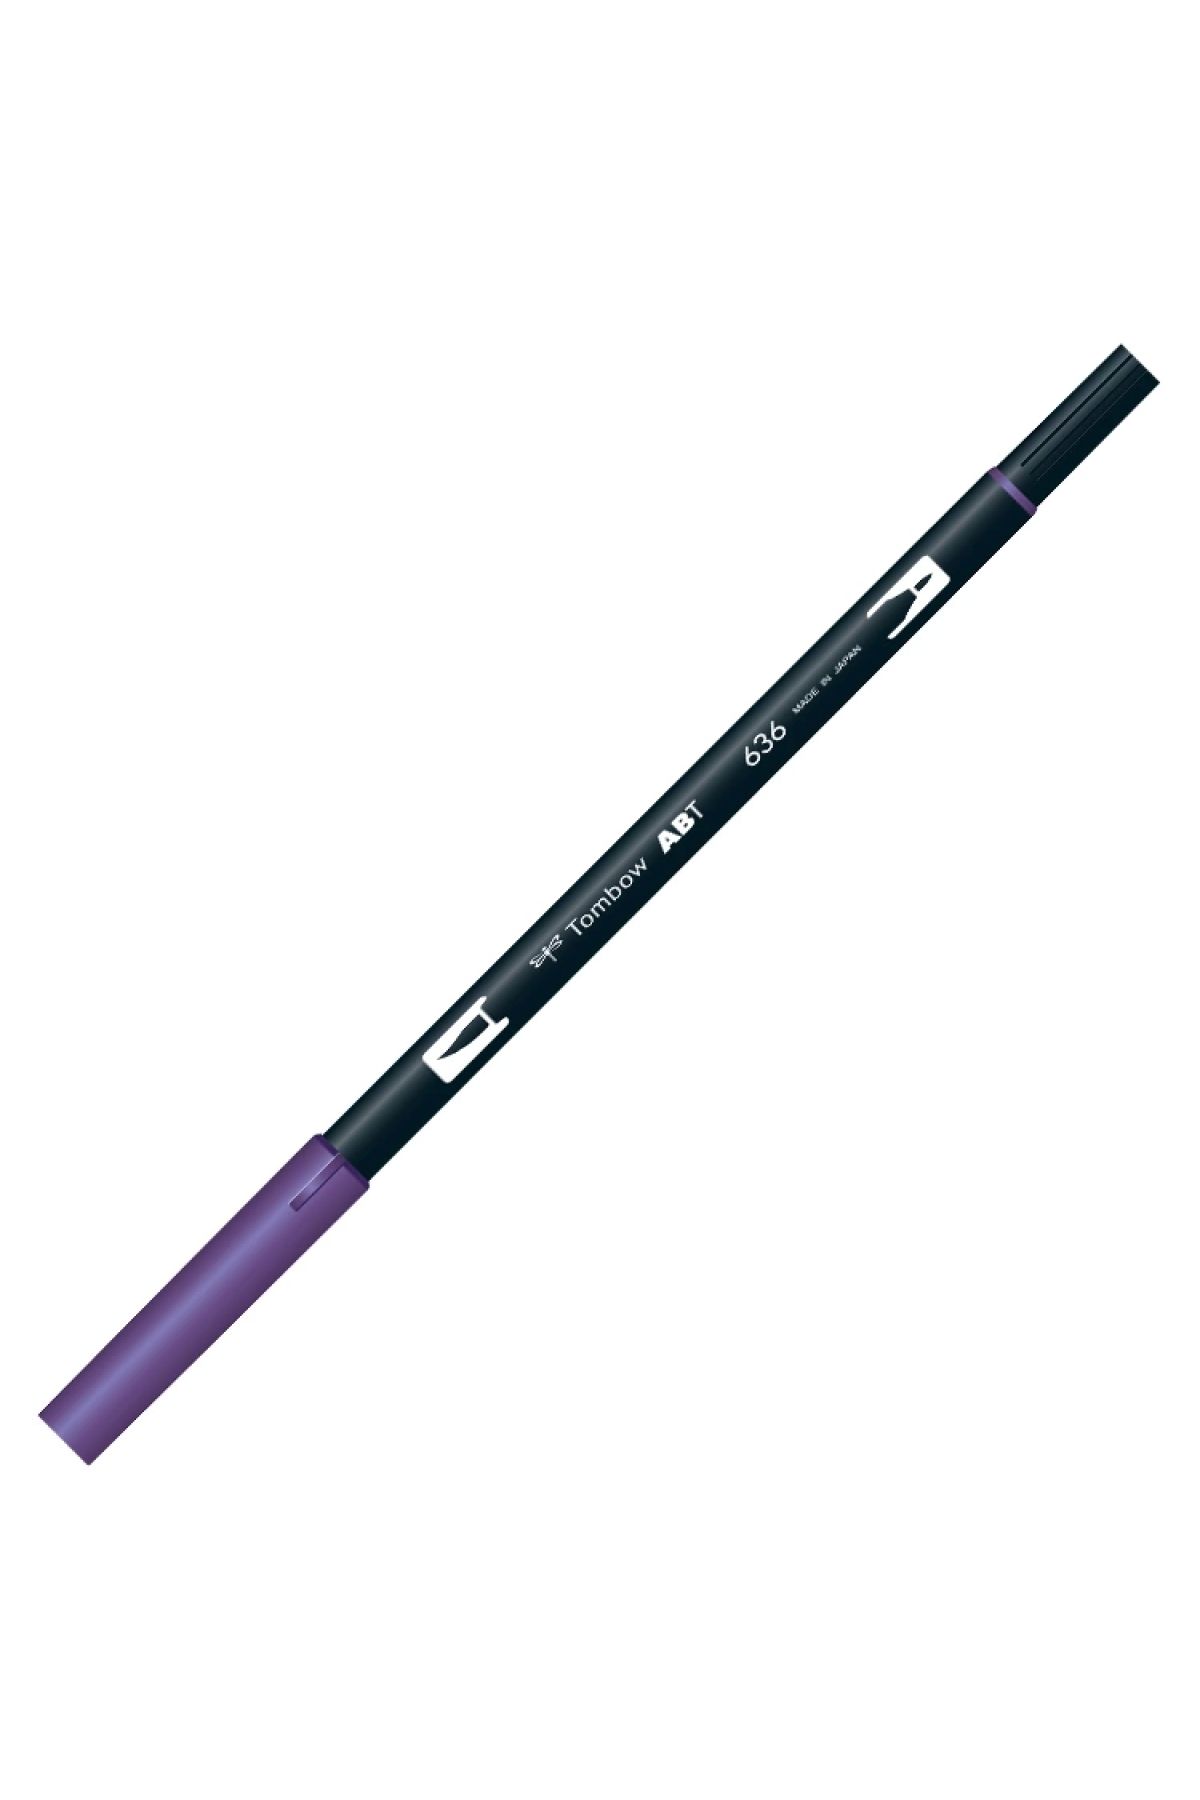 Tombow Brush Abt 636 Grafik Kalemi Imperial Purple